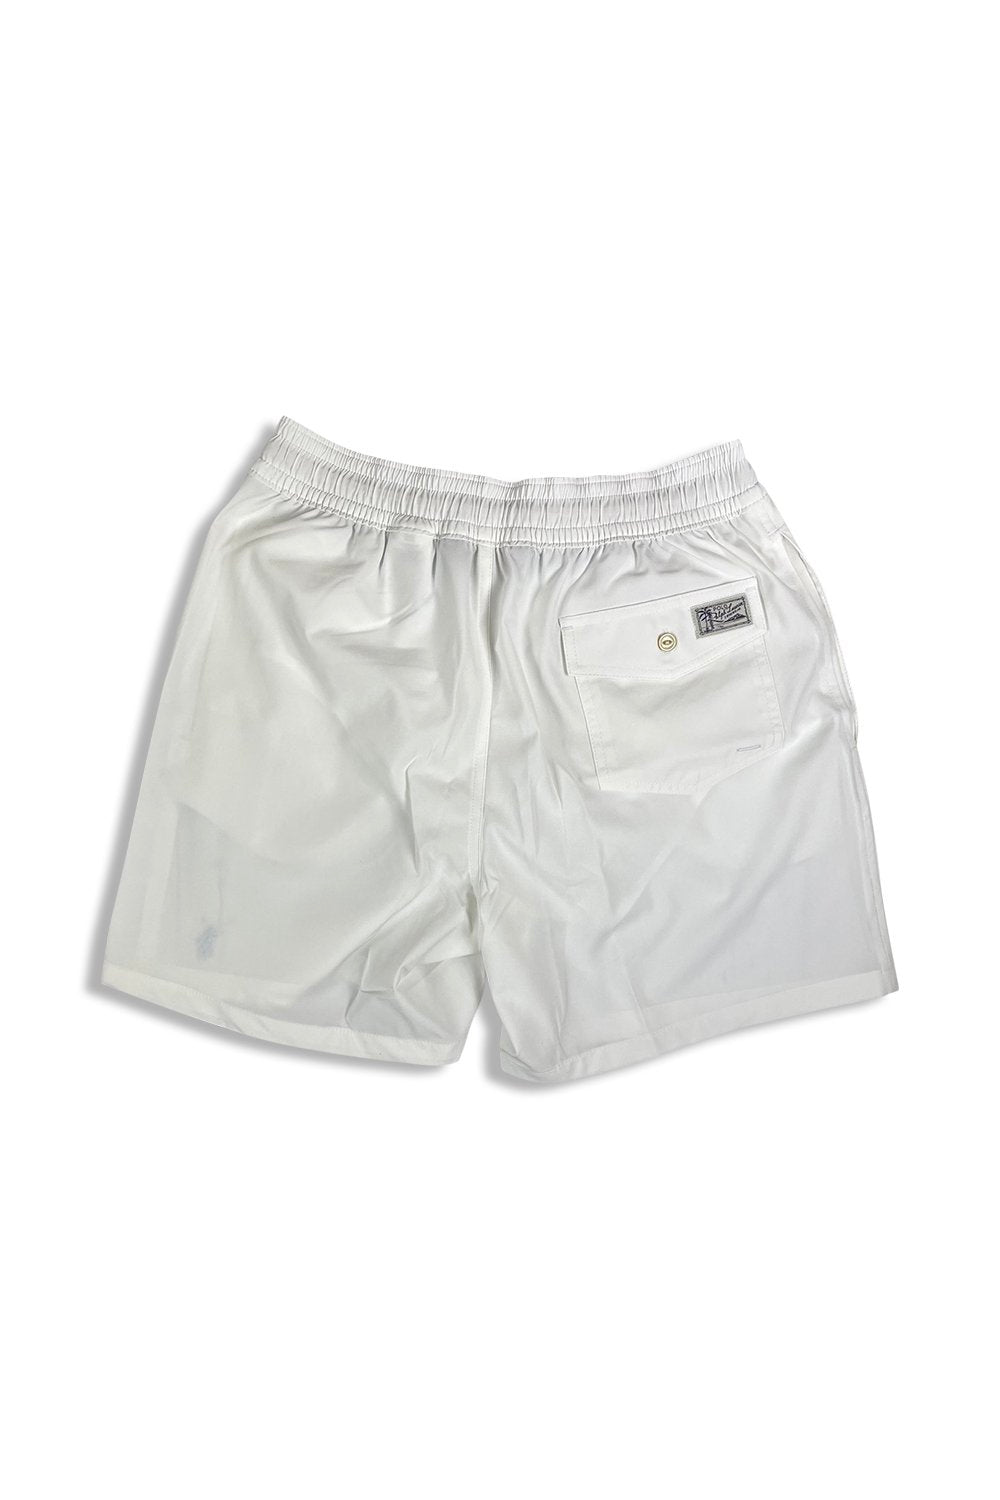 Men's White Polo Ralph Lauren Traveller Slim Fit Swim Shorts